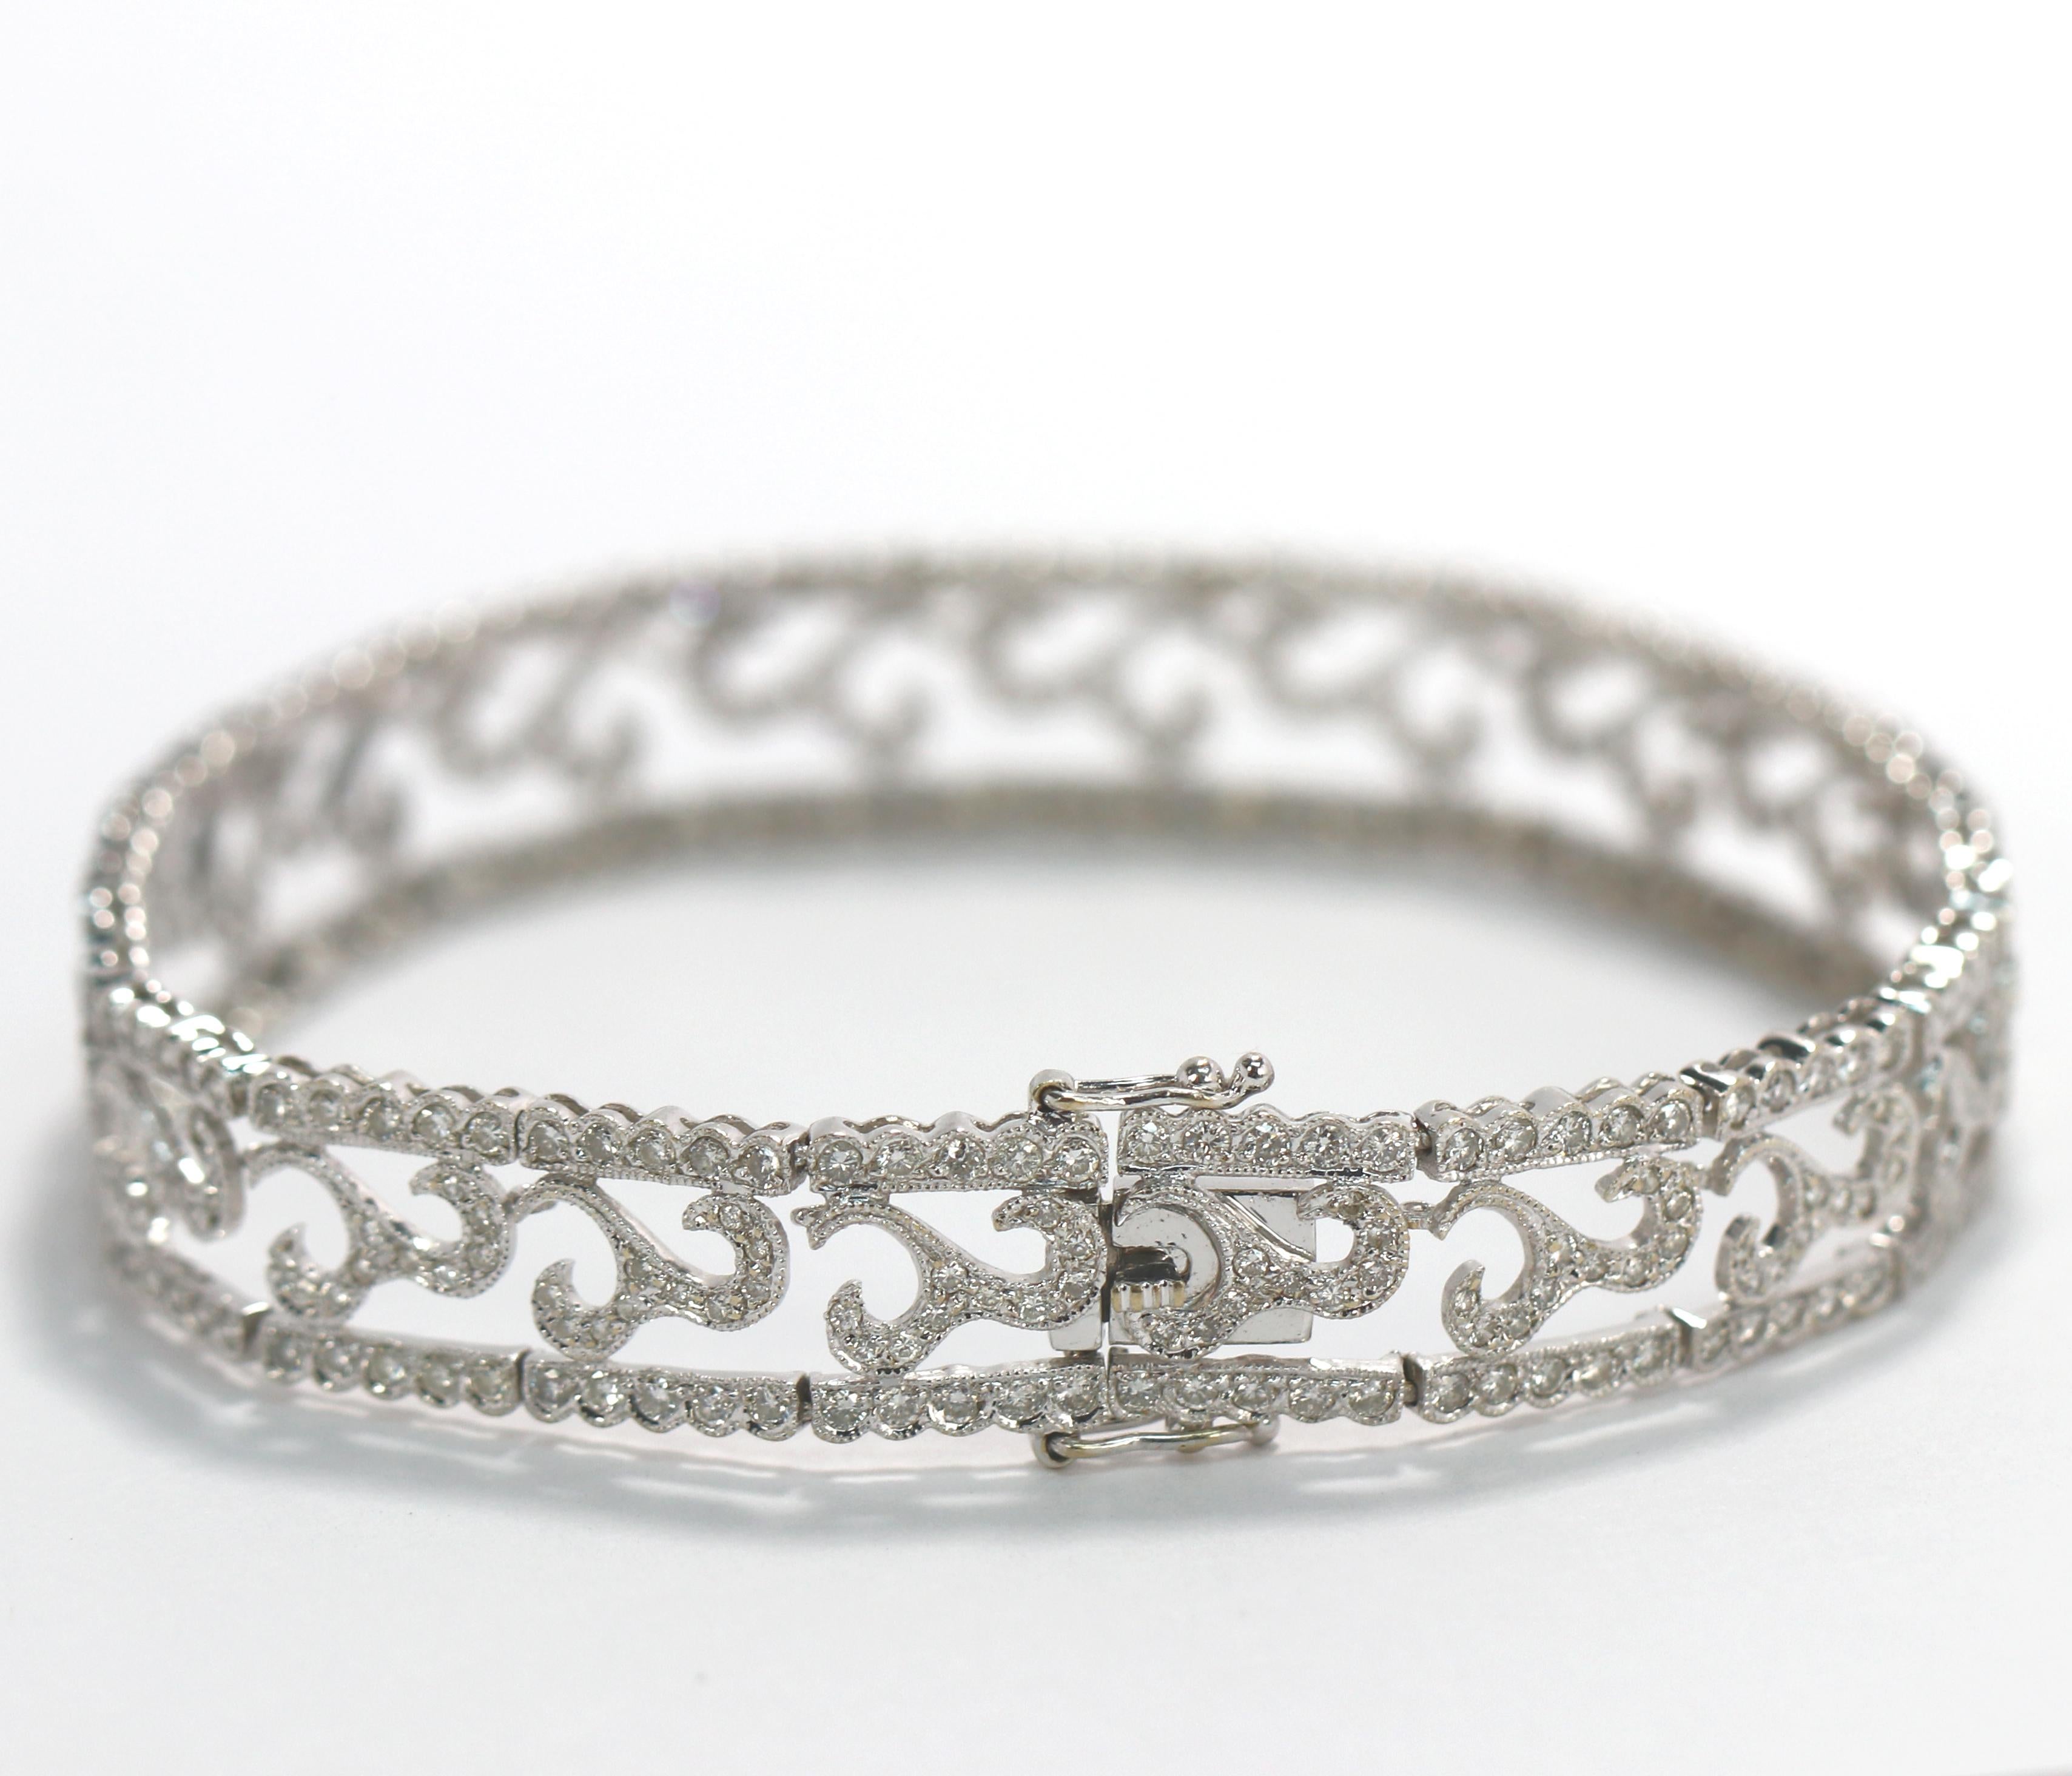 Women's White Gold Antique Inspired Diamond Bracelet